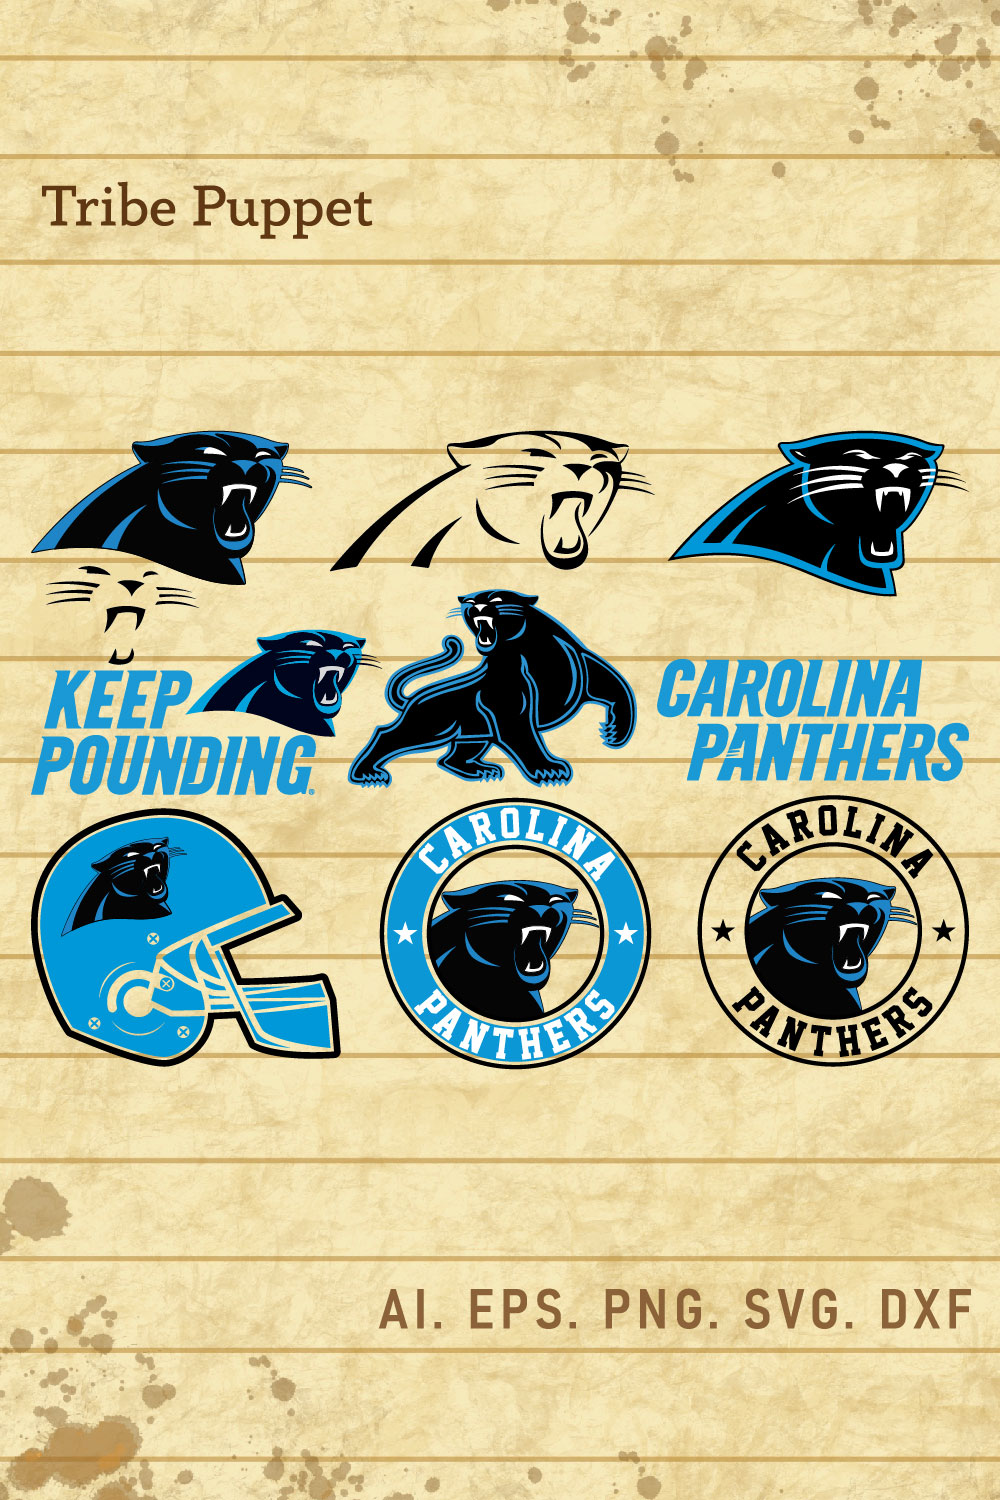 Carolina Panthers wallpaper iPhone